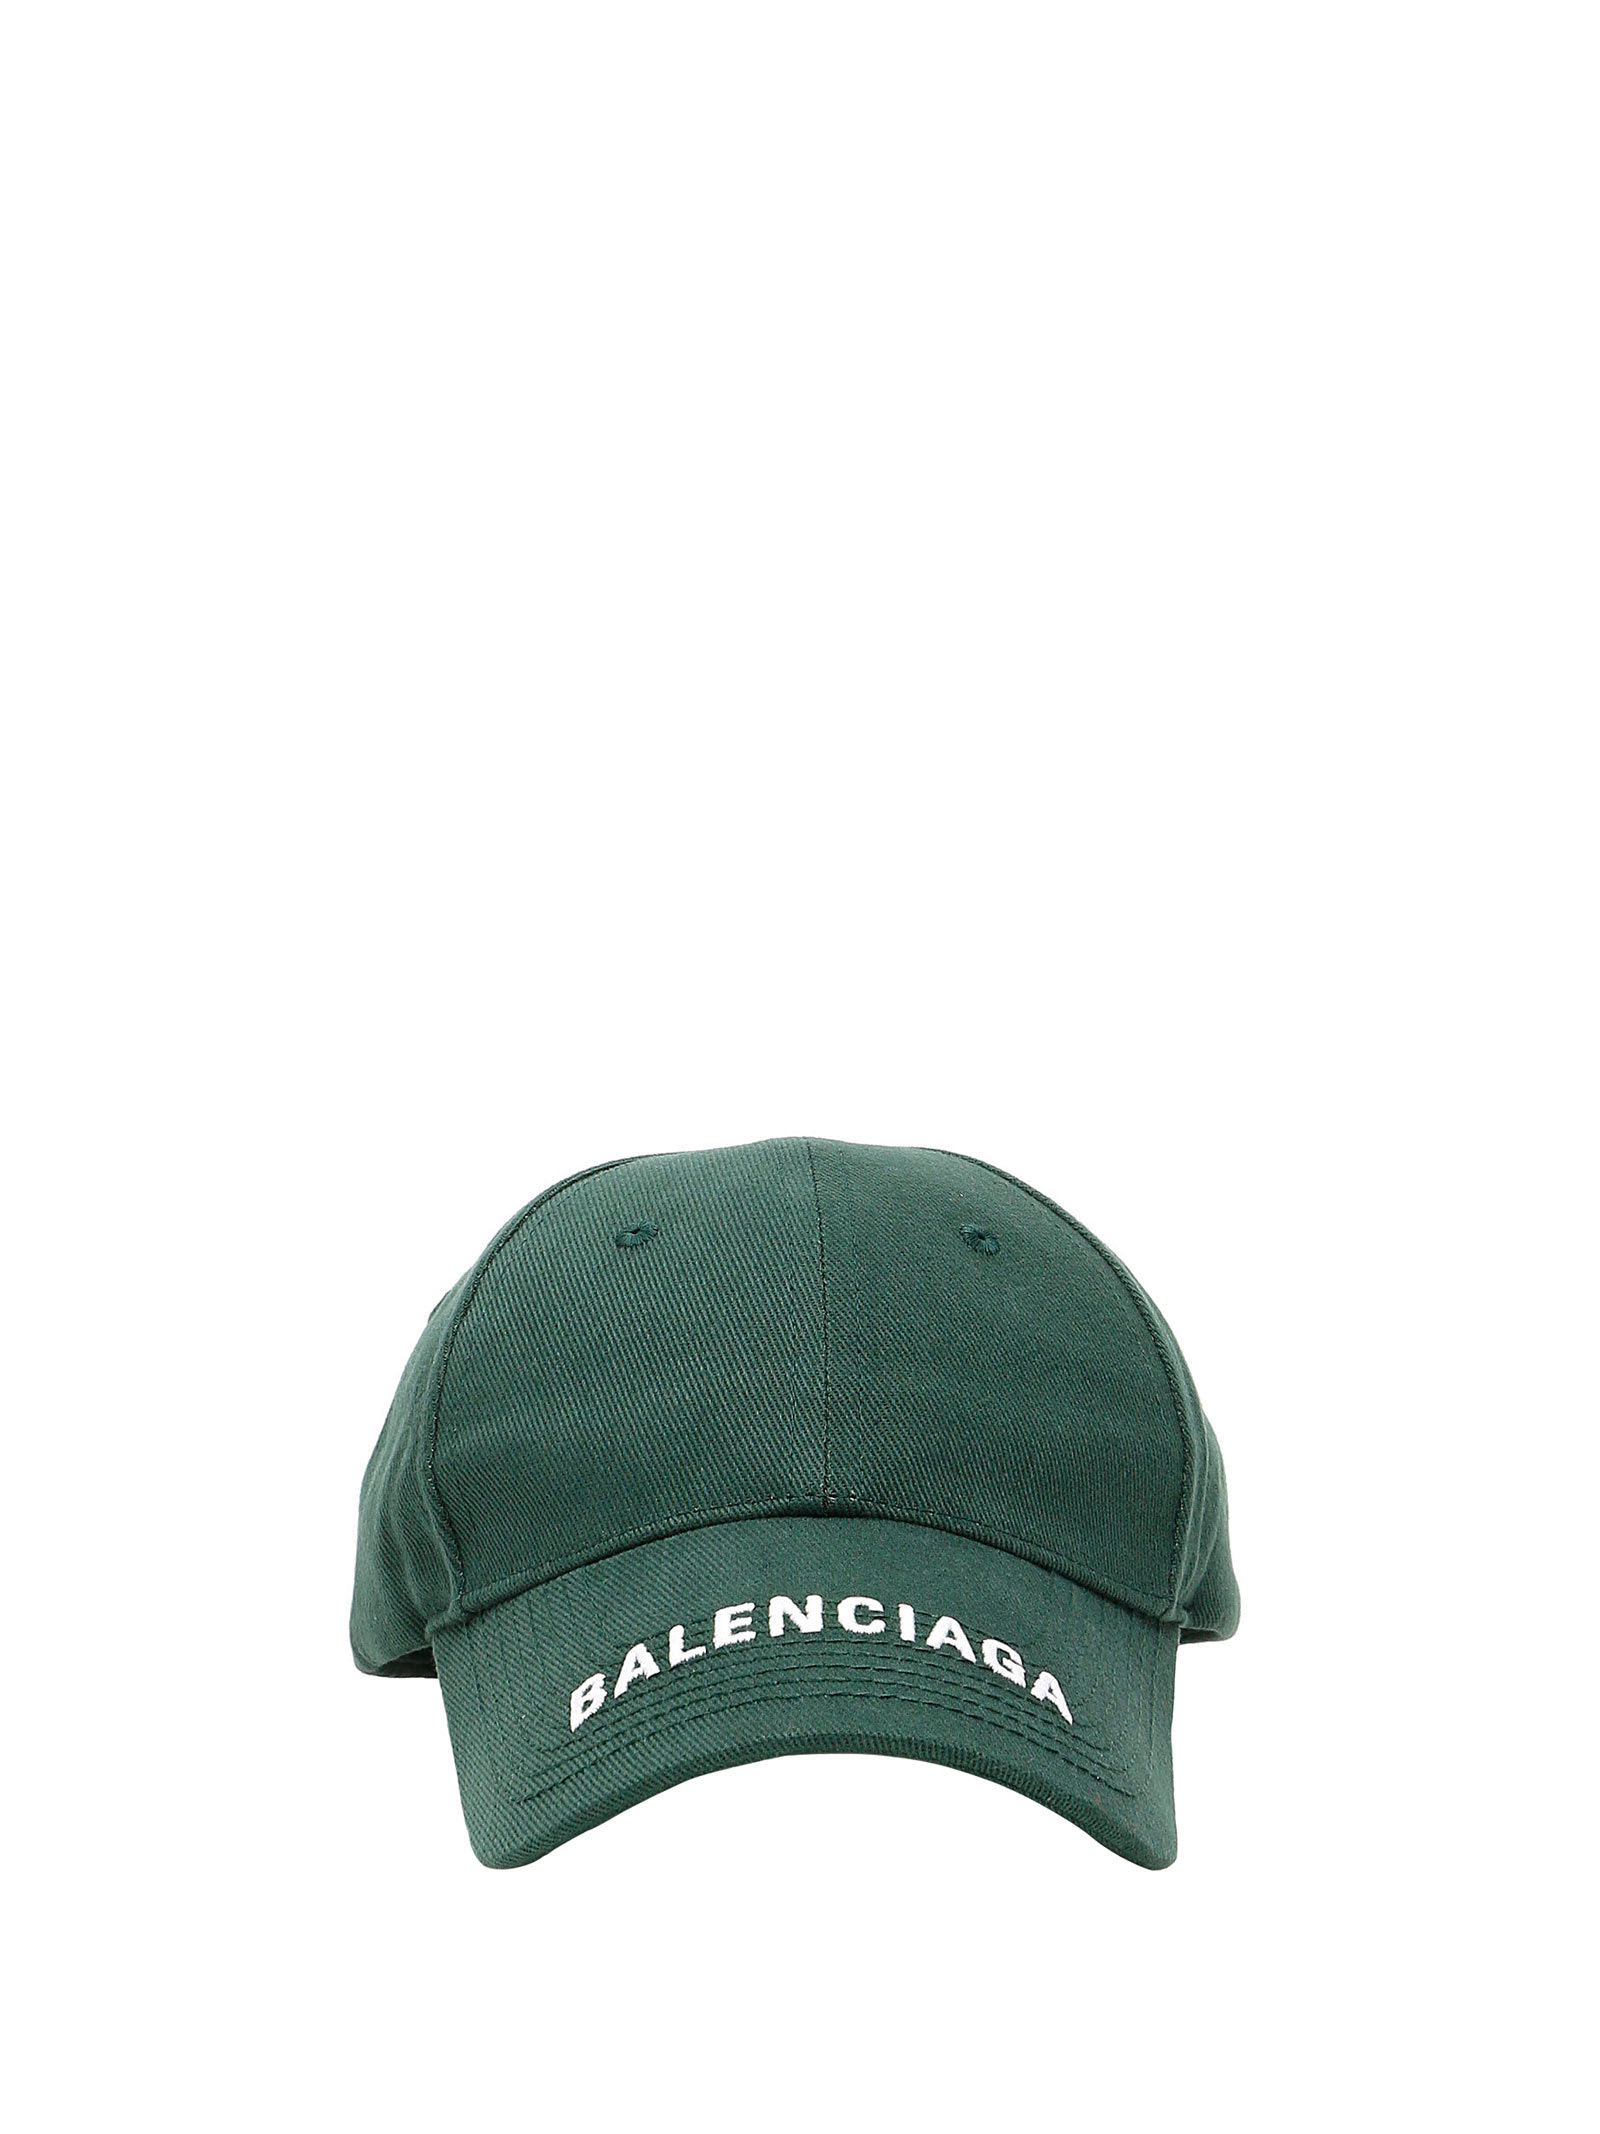 BALENCIAGA GREEN BASEBALL LOGO CAP,11284105